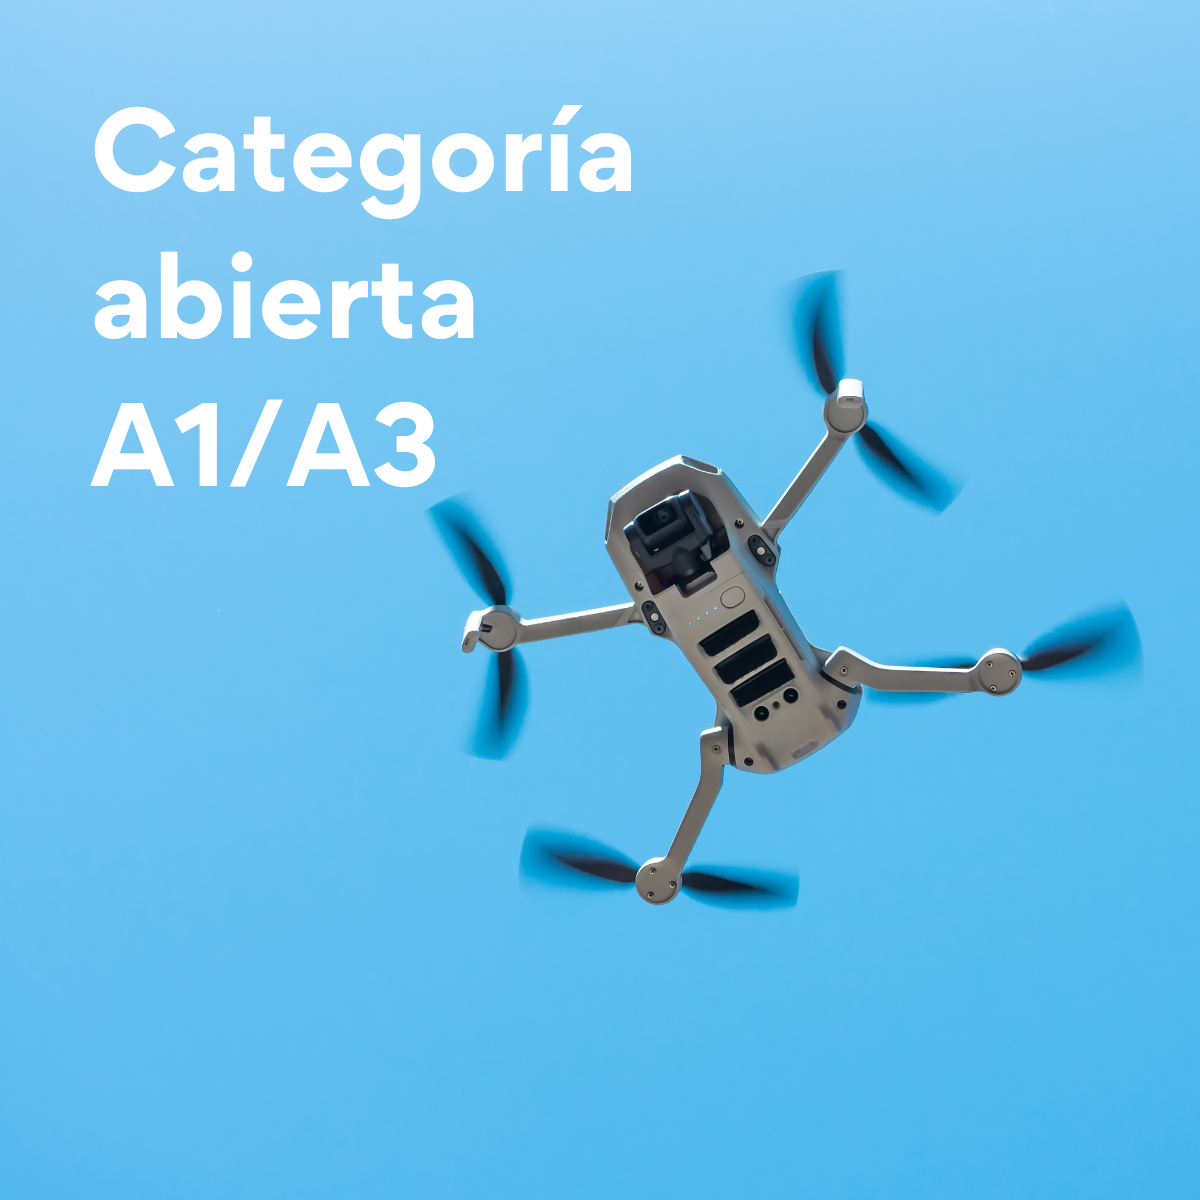 Curso básico piloto de drones A1/A3